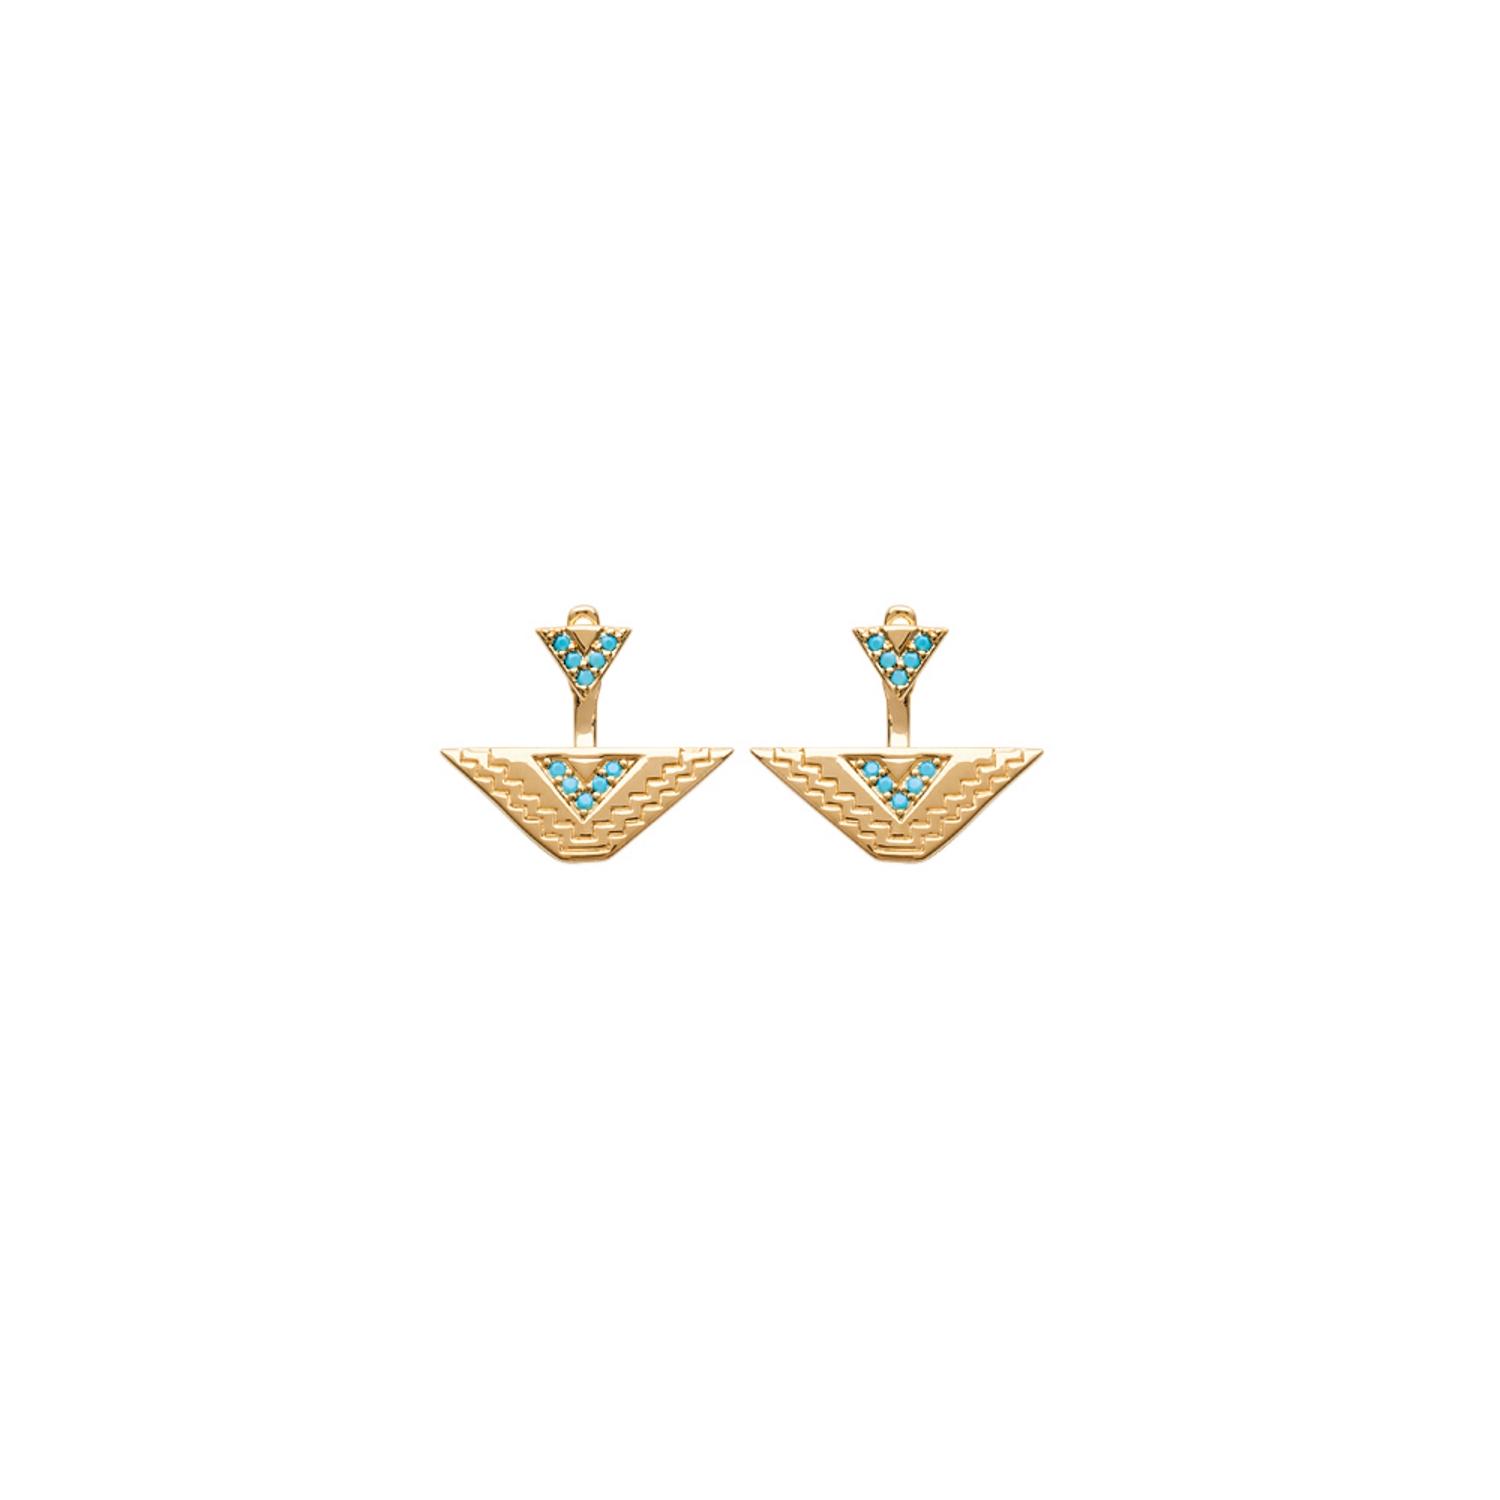 Boucles d'oreilles en plaqué or et pierres d'imitation turquoise. Pendantes Triangle Turquoise  Adolescent Adulte Femme Fille Indémodable 